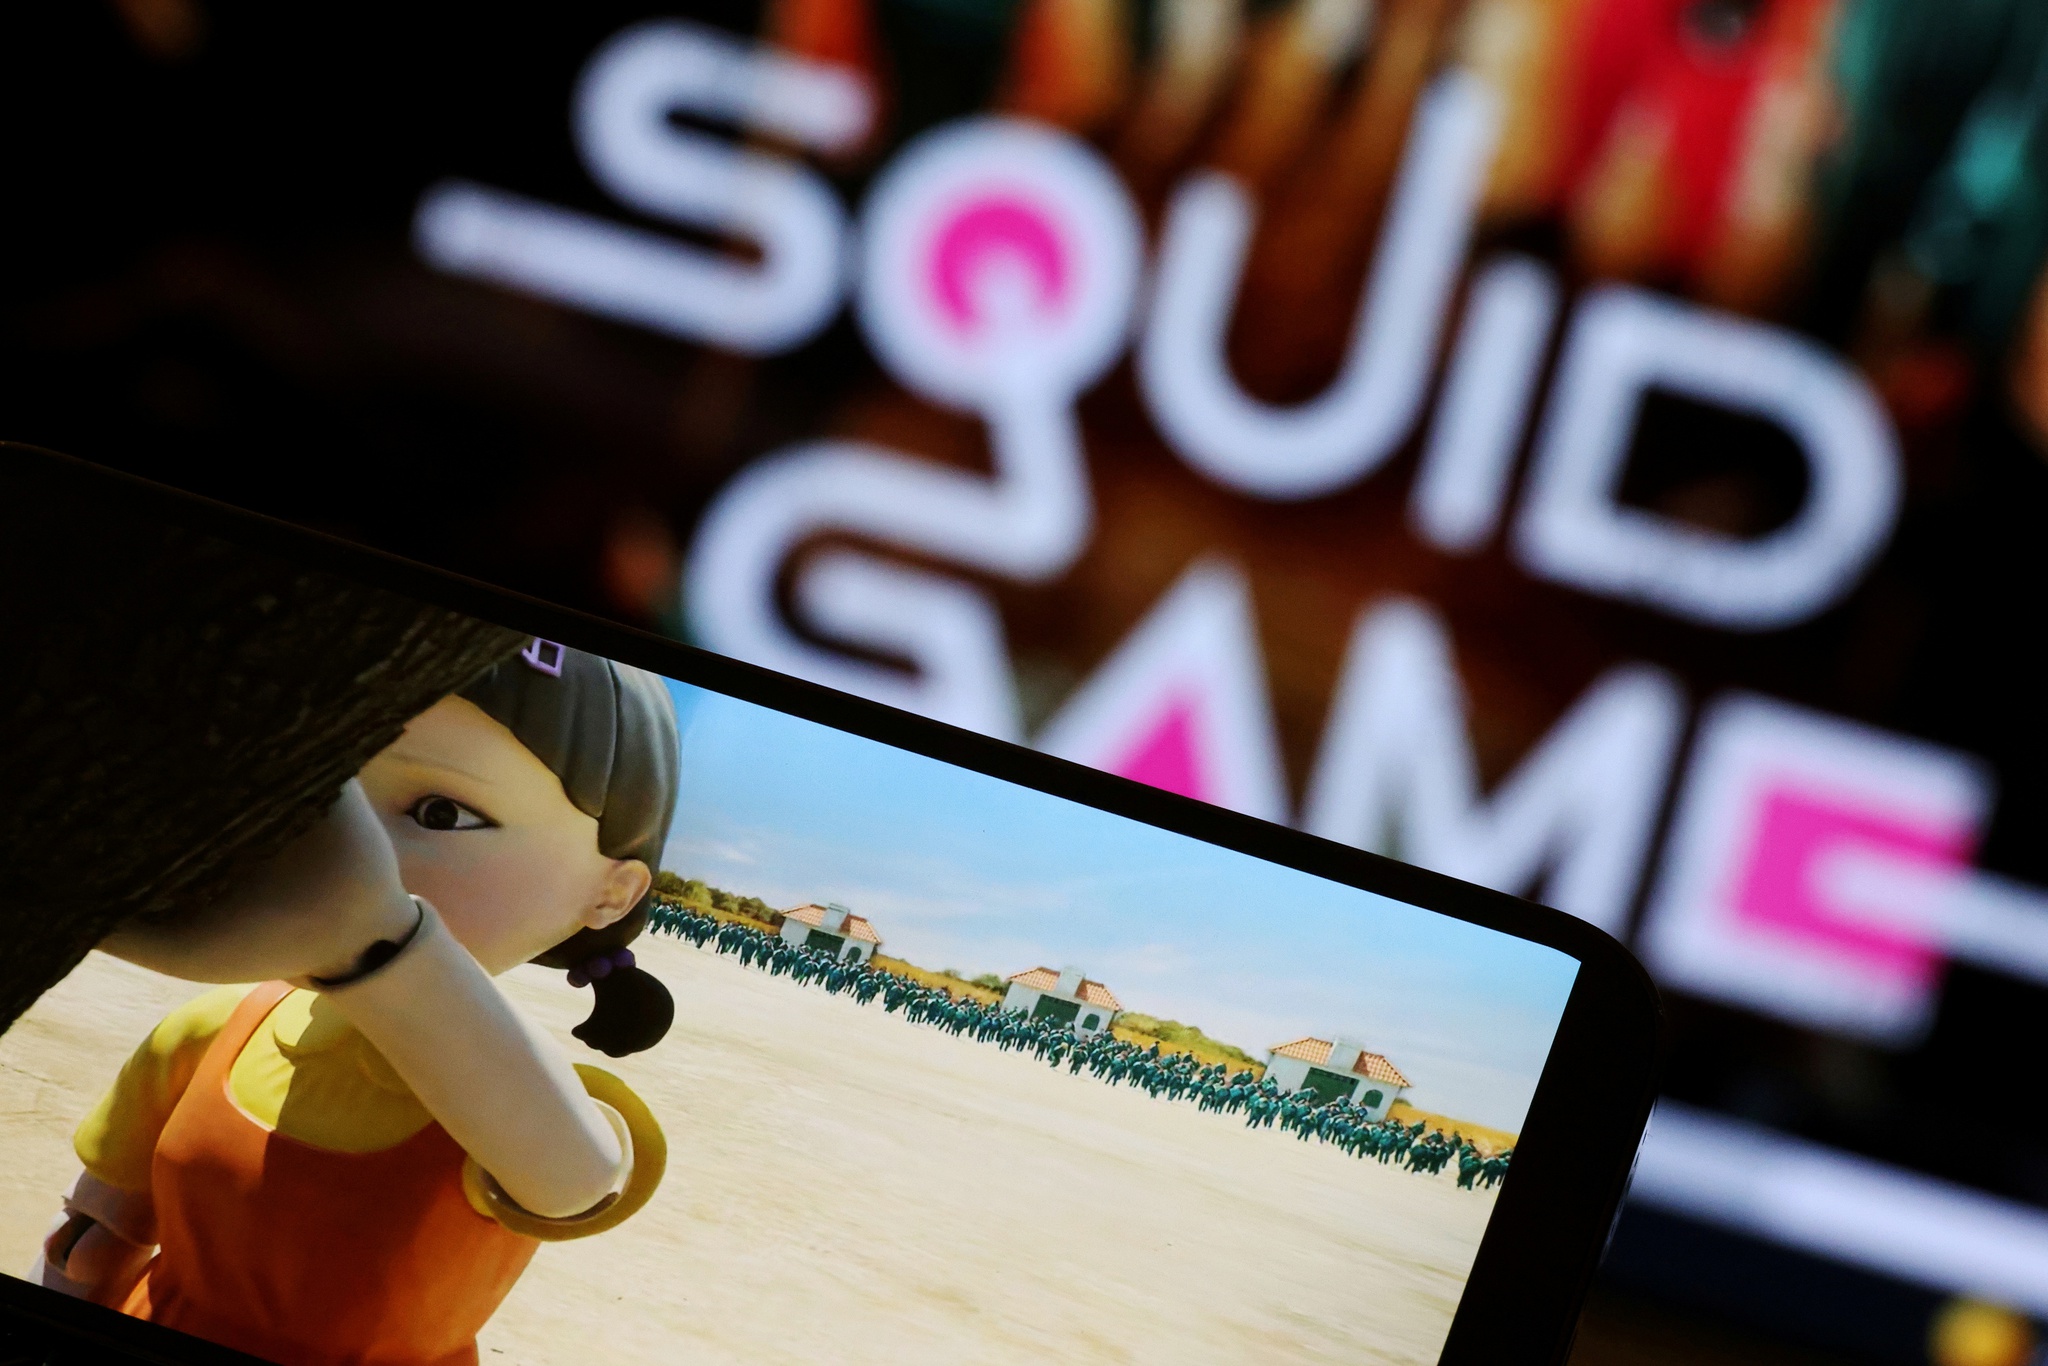 Netflix cria reality show inspirado em 'Squid Game'. E o prémio vale milhões